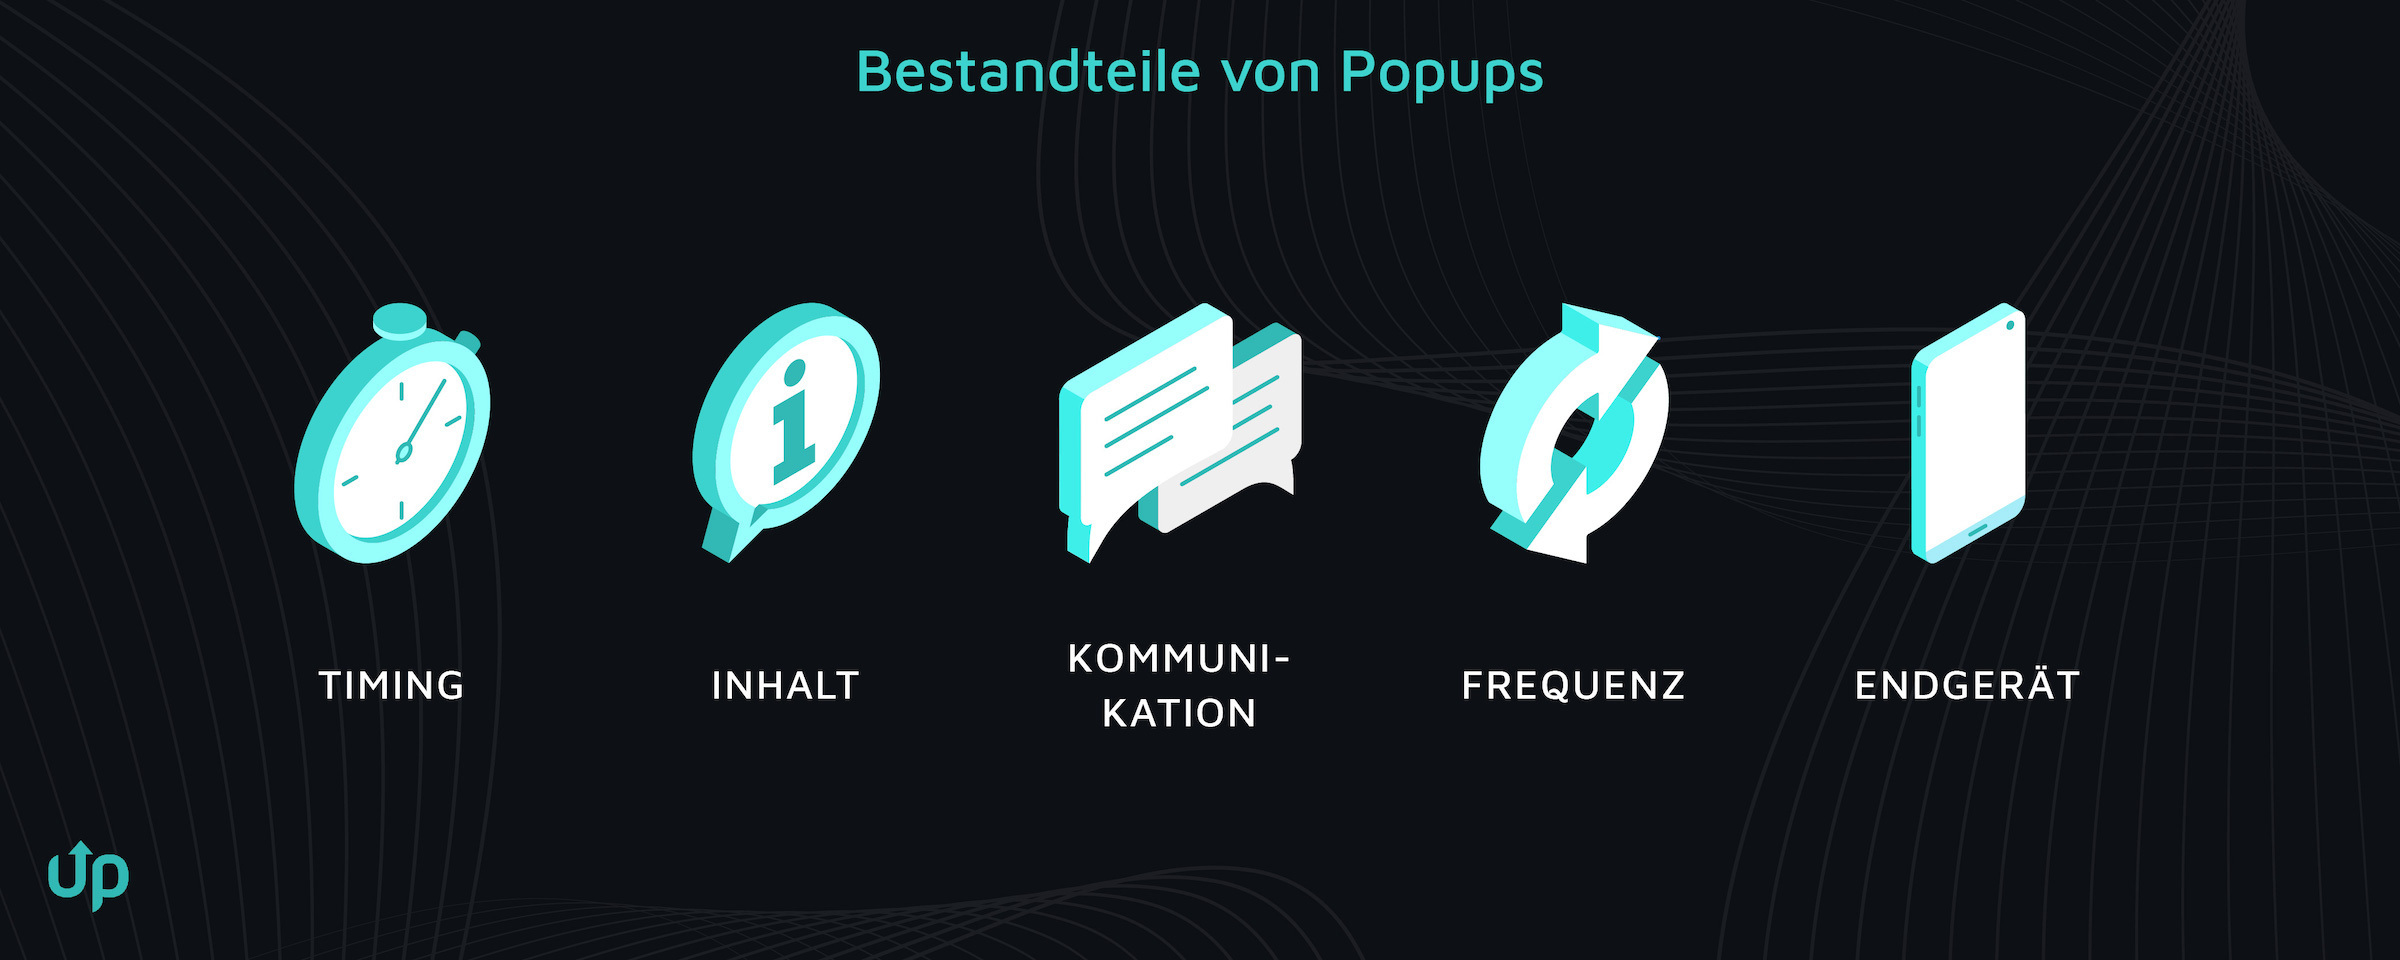 Einsatz-von-Popups-im-E-Commerce_Bestandteile-von-Popups_DE